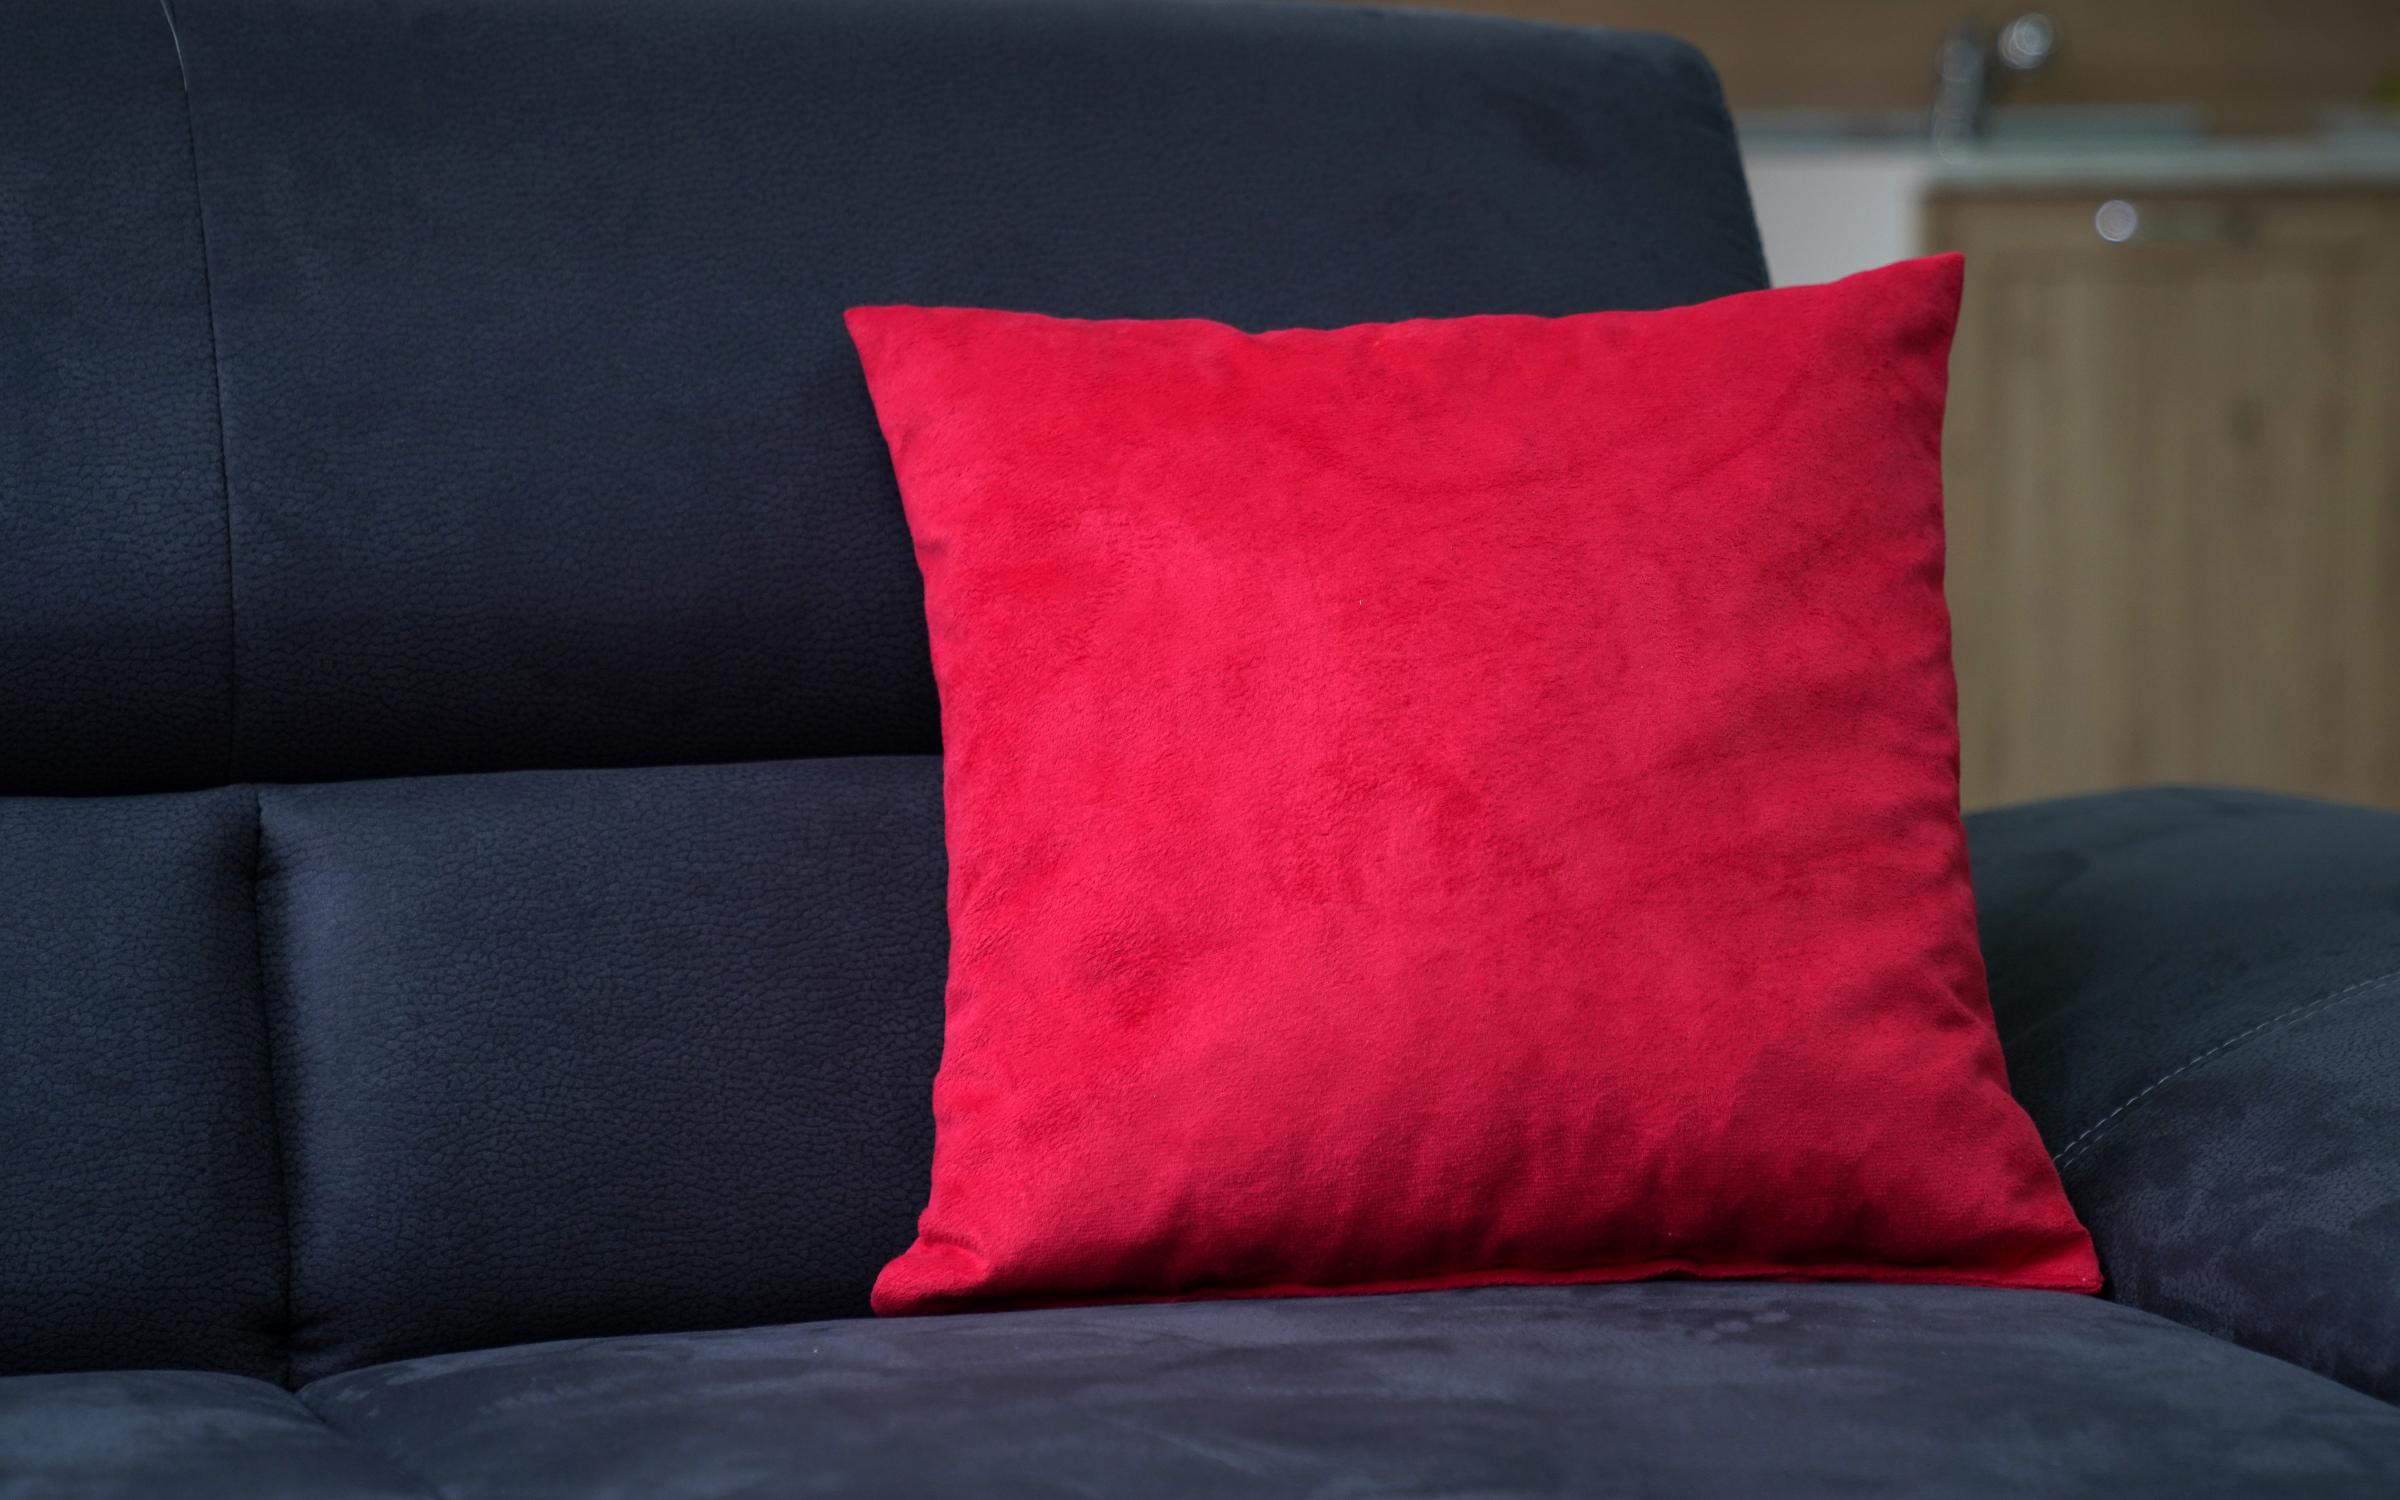 Декоративна перница, црвена  2